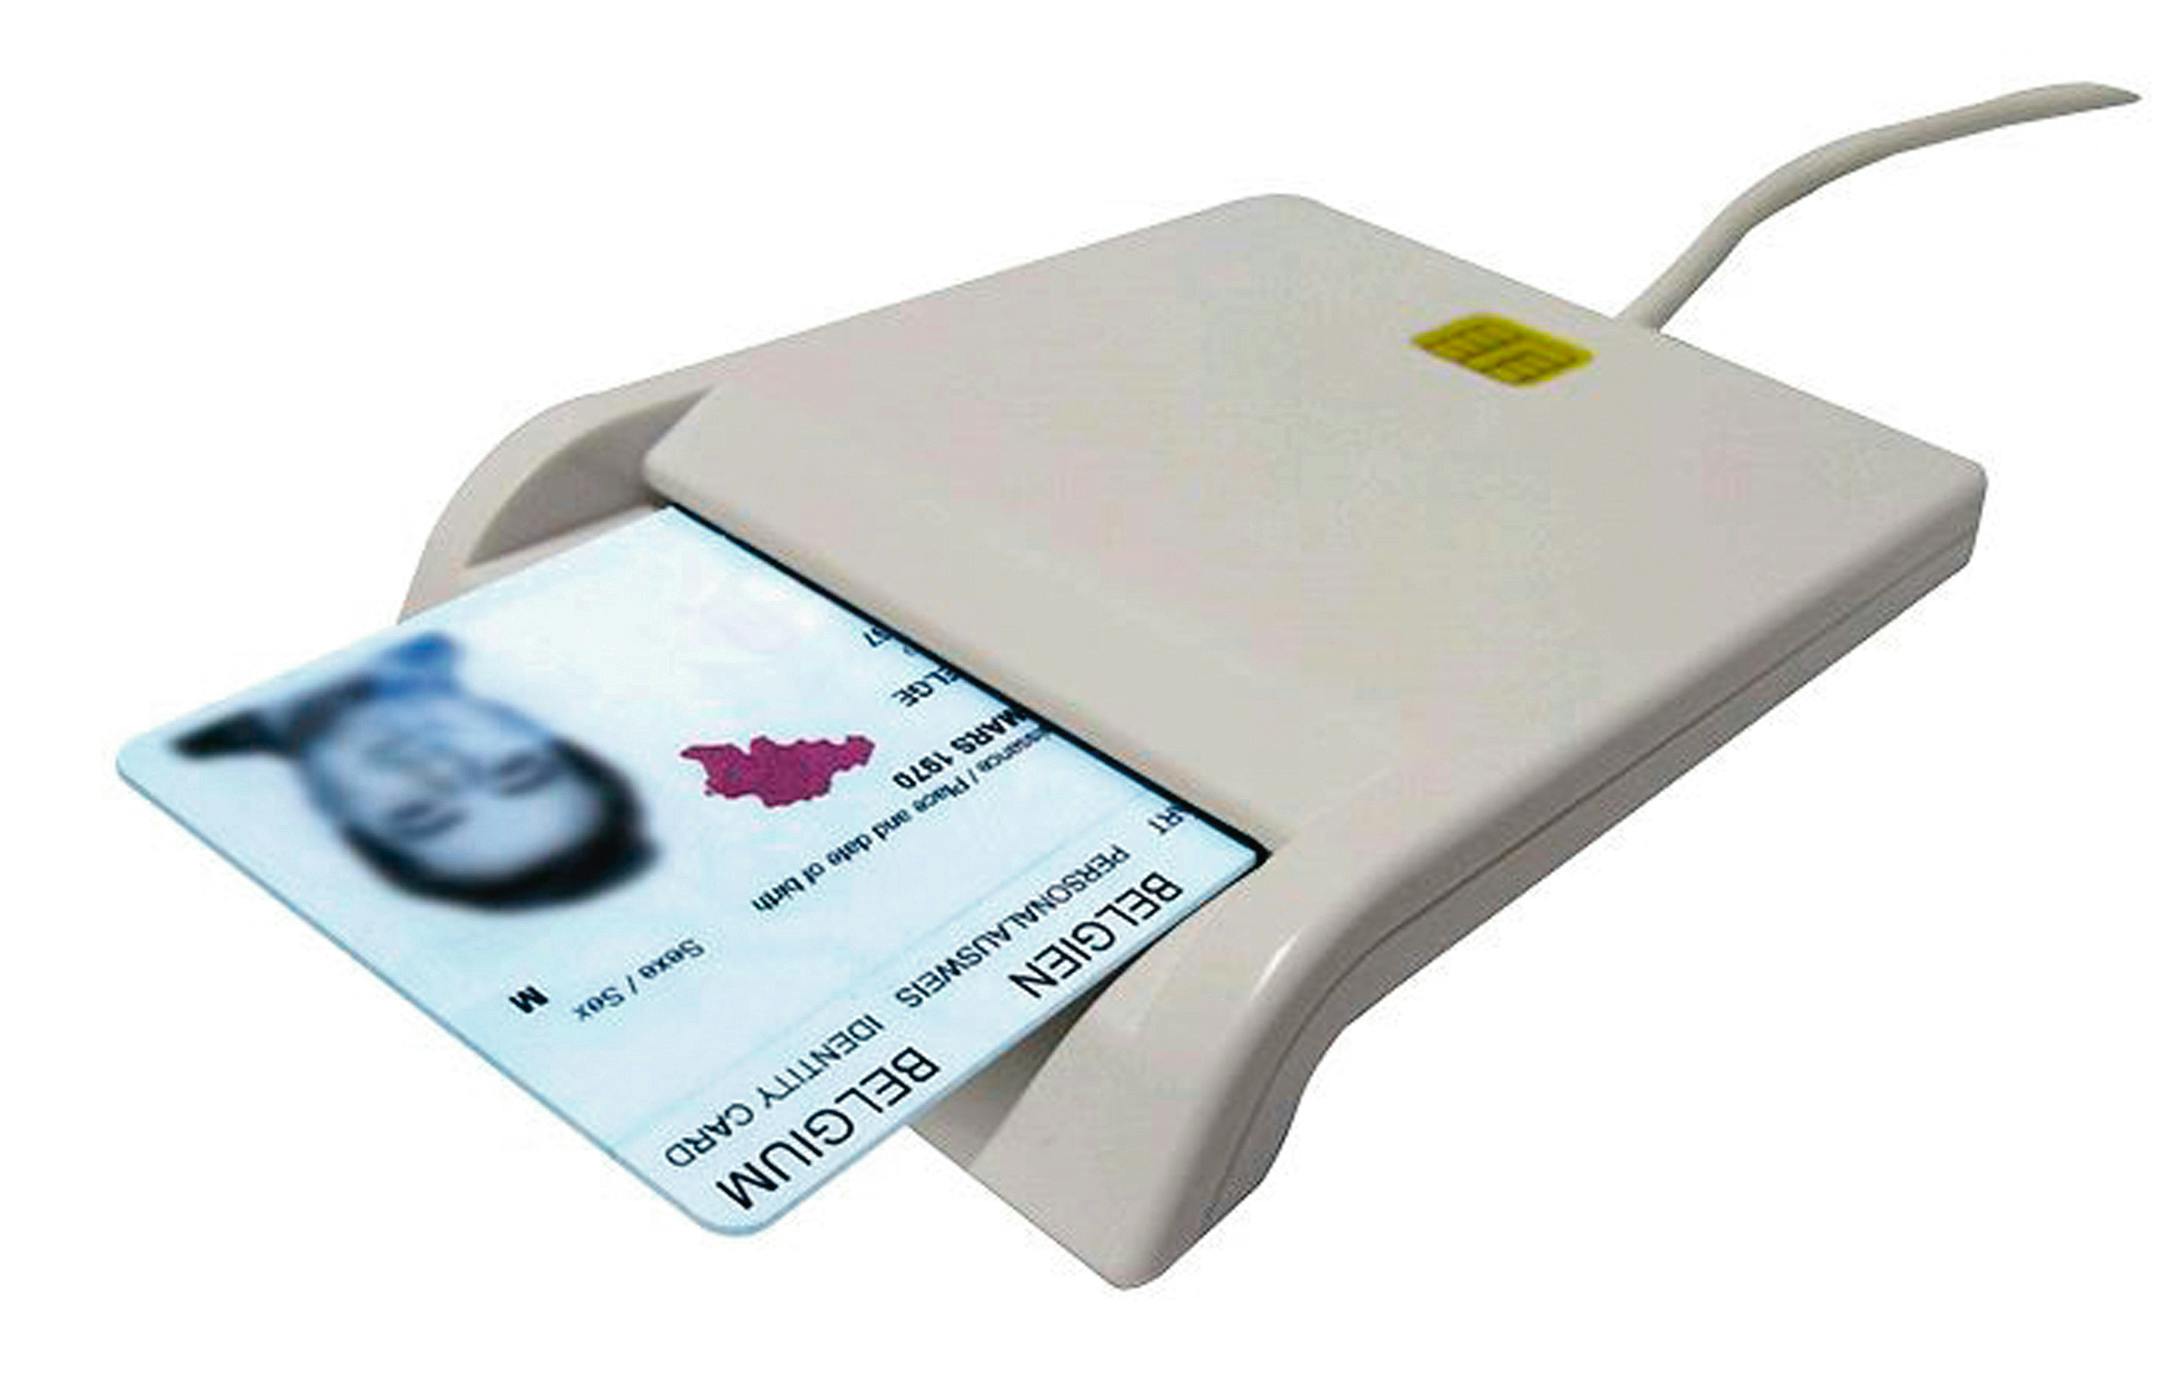 Смарт карты для детей. Mini Card Reader model mcr4600 картридер для смарт-карт. Считыватель смарт карты Eid. Считыватель смарт-карт УЭК, 80х45. Считыватель бесконтактный смарт-карт 234698.